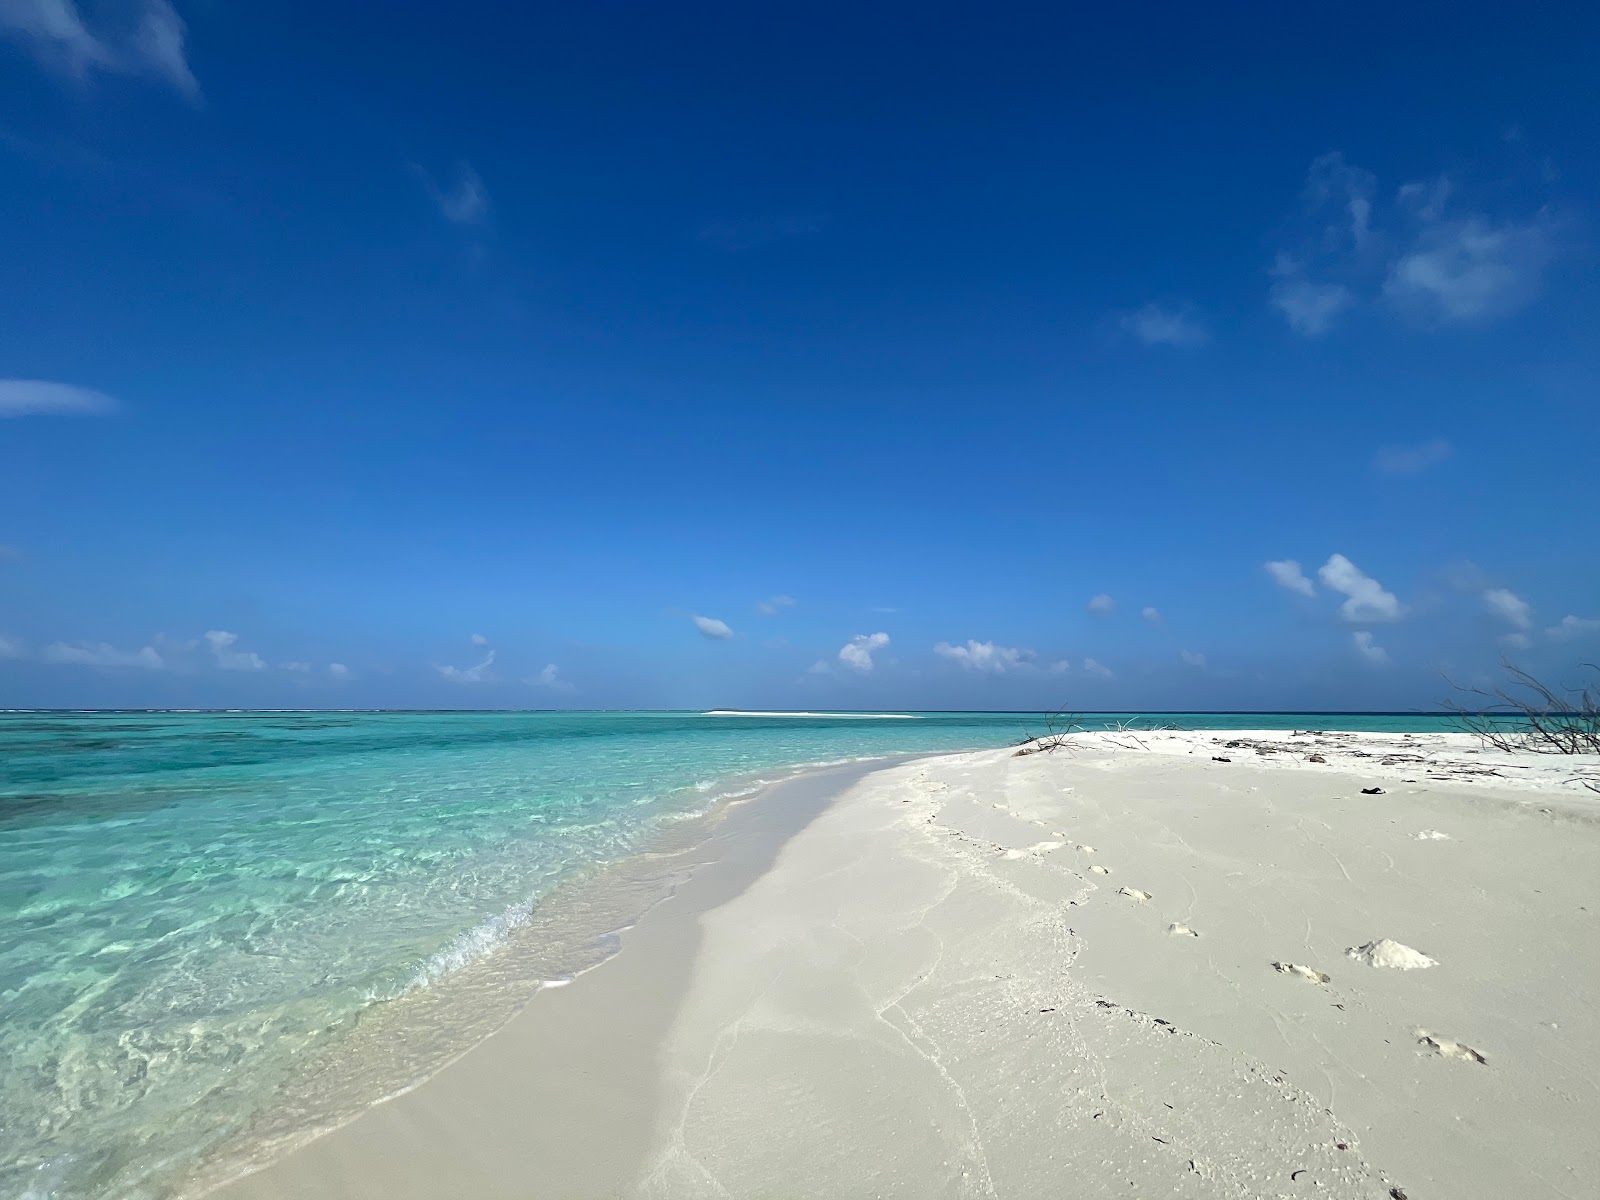 Fotografie cu Munyafushi Beach cu plajă spațioasă